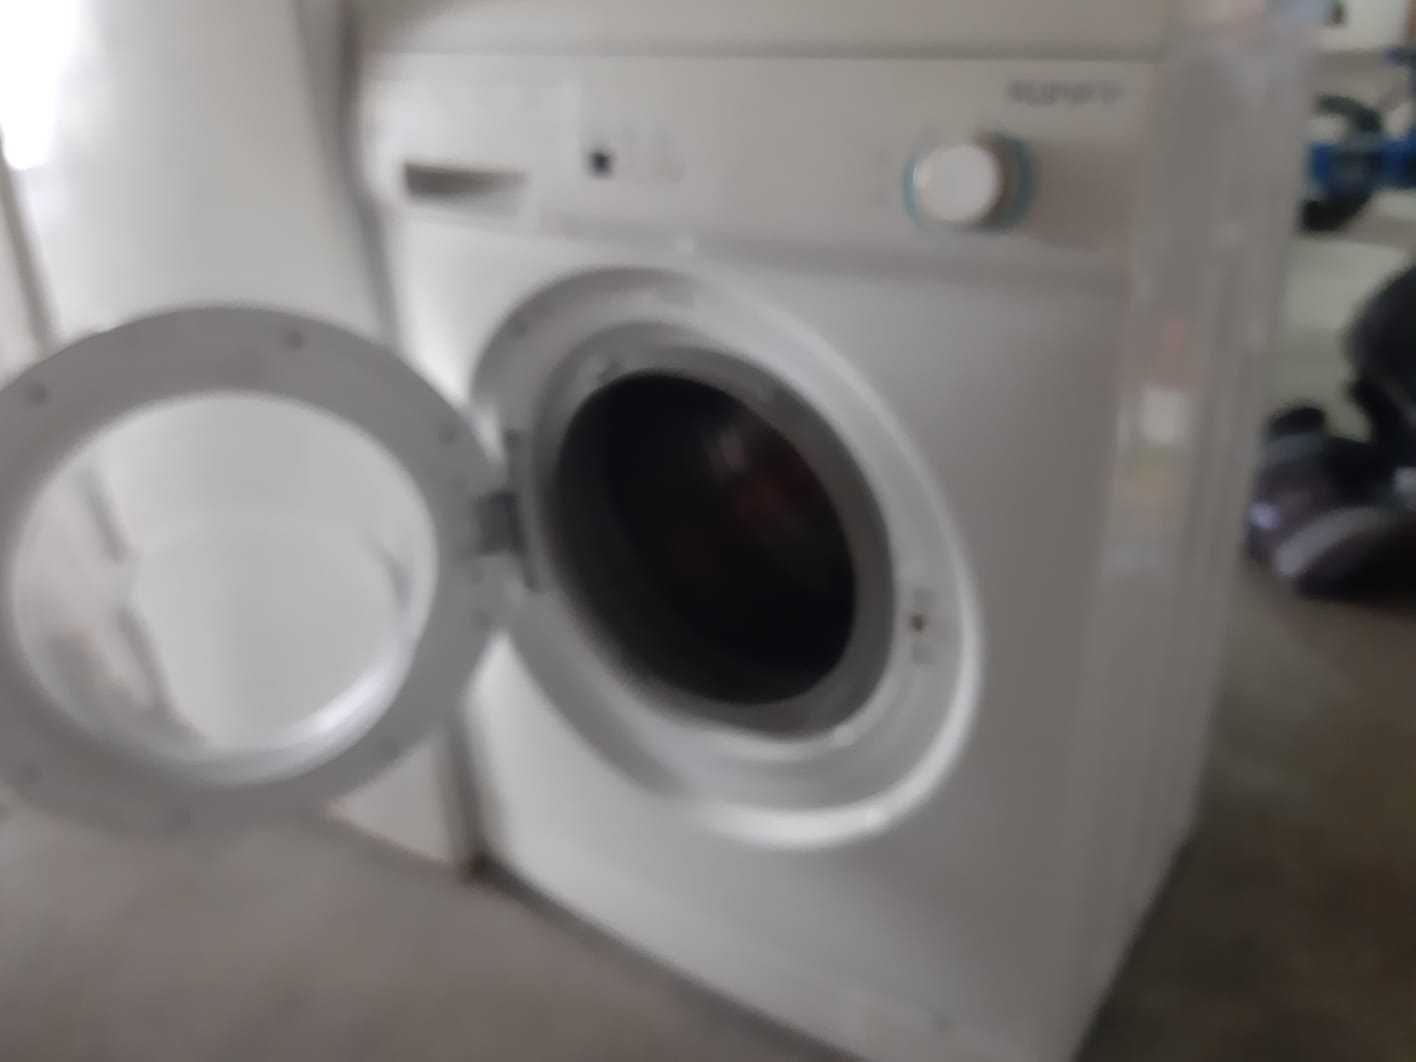 Máquina de lavar roupa - Kunft WMM560WH